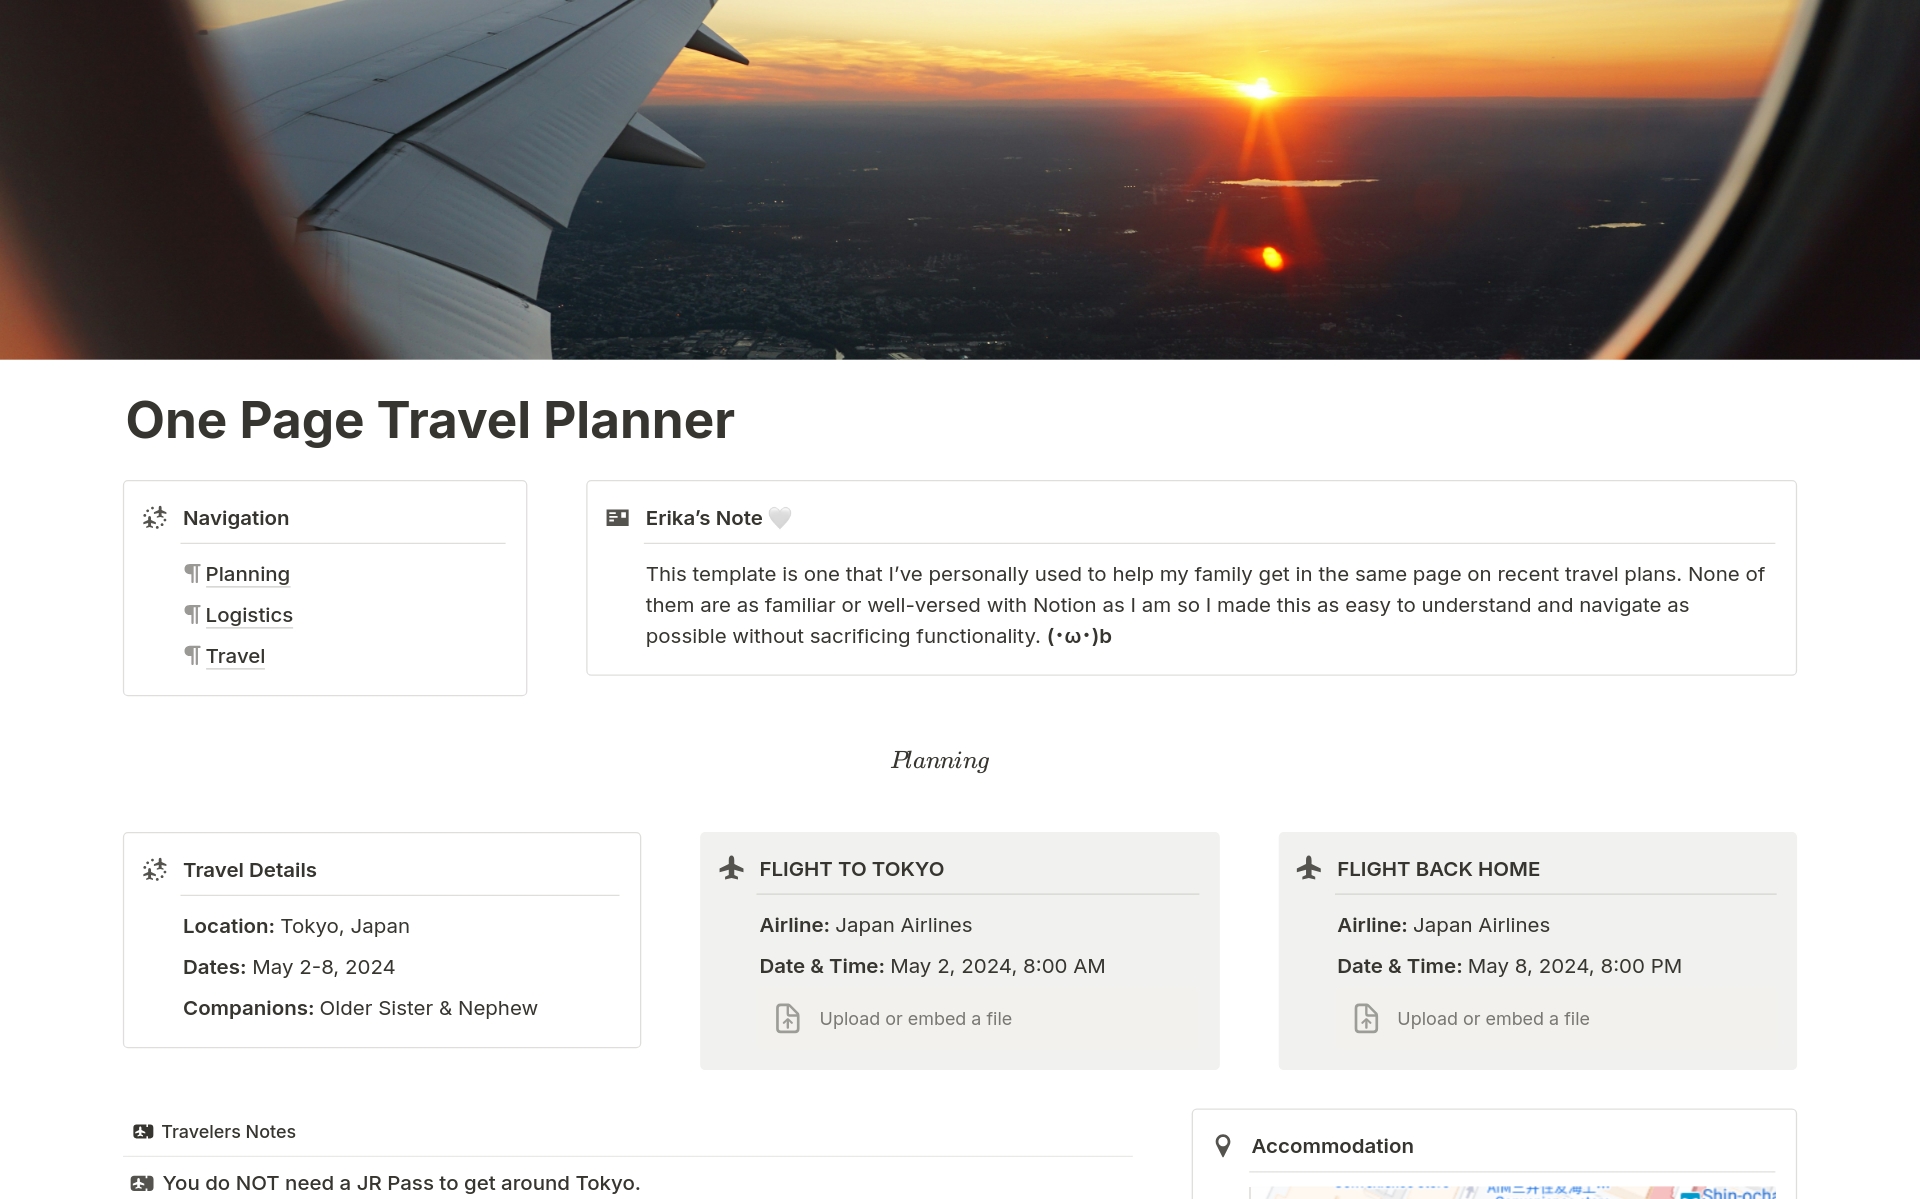 Uma prévia do modelo para One Page Travel Planner